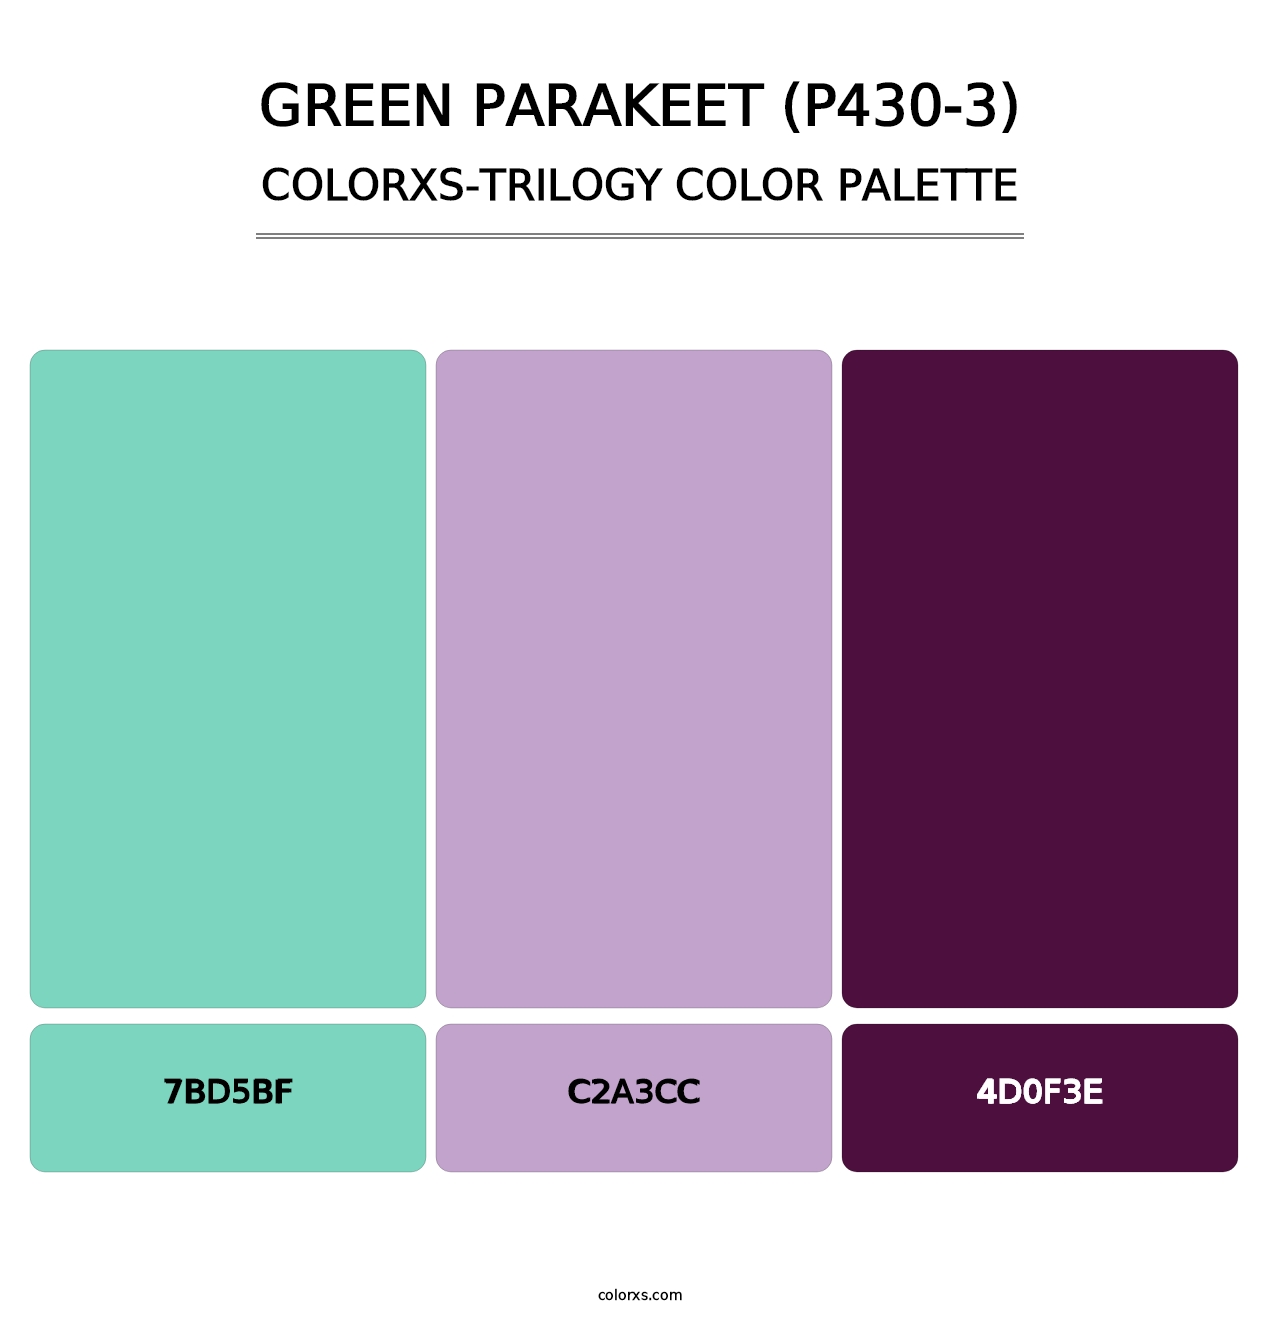 Green Parakeet (P430-3) - Colorxs Trilogy Palette